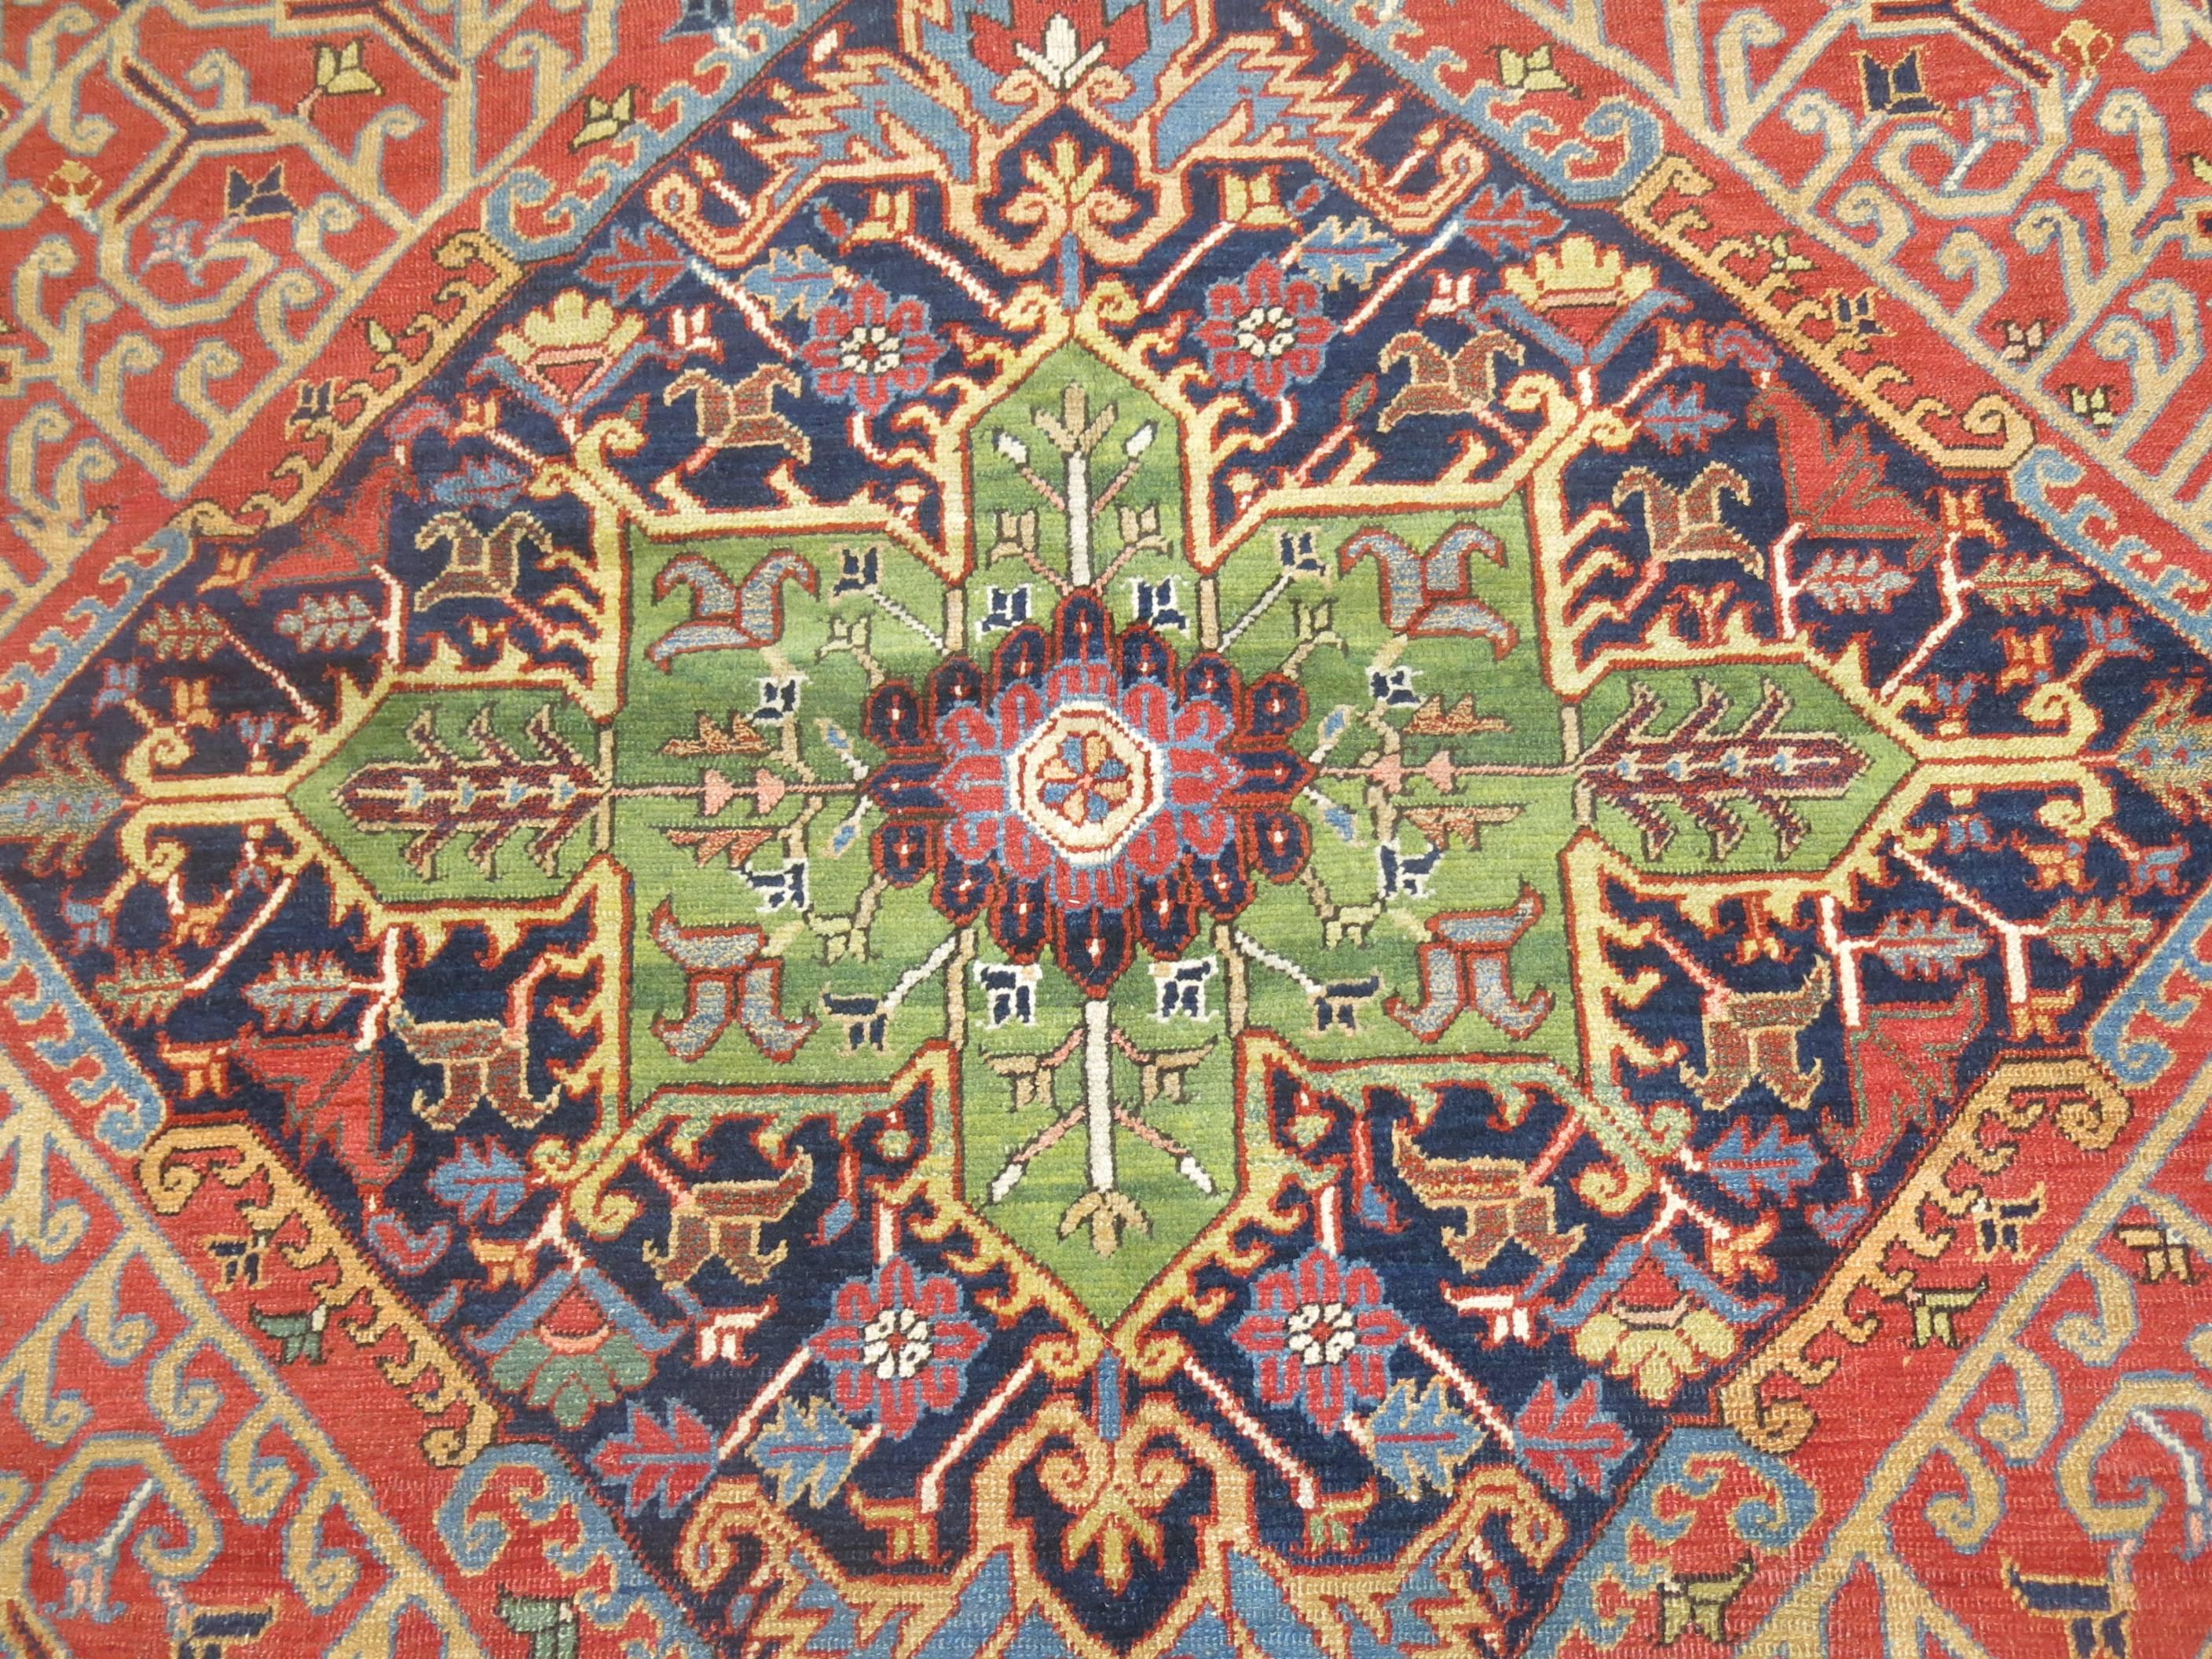 Hand-Knotted Unique Color Combo Antique Persian Heriz Carpet For Sale